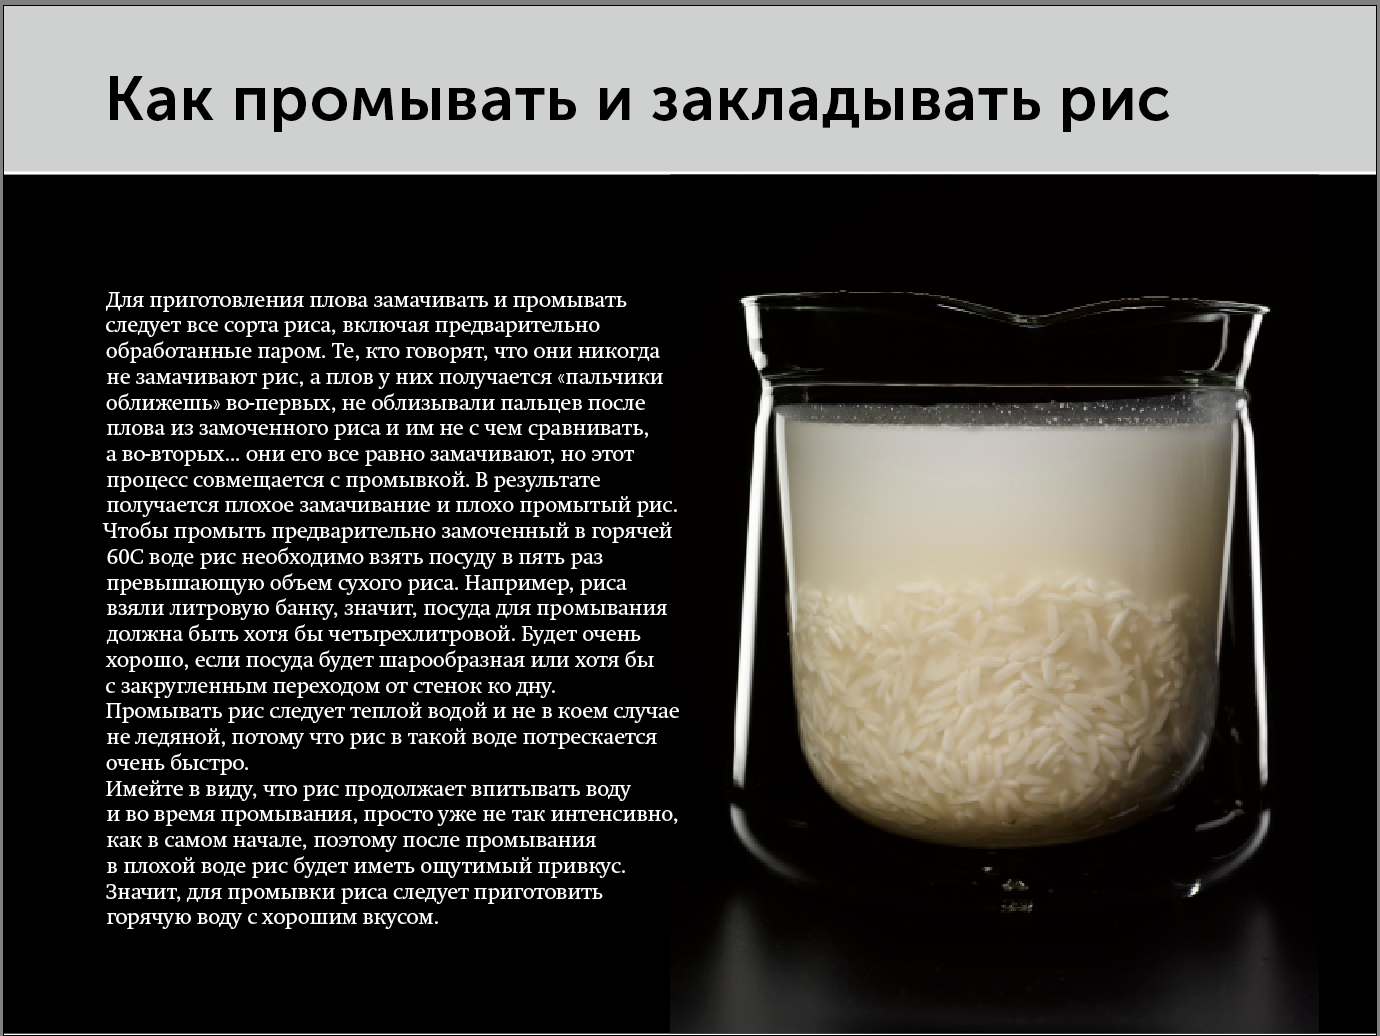 Во сколько раз увеличивается объем риса. Соотношение риса и воды для плова. Порции риса и воды для плова. Соотношение воды и риса в плове в стаканах. Рис пропорции воды и риса для плова.